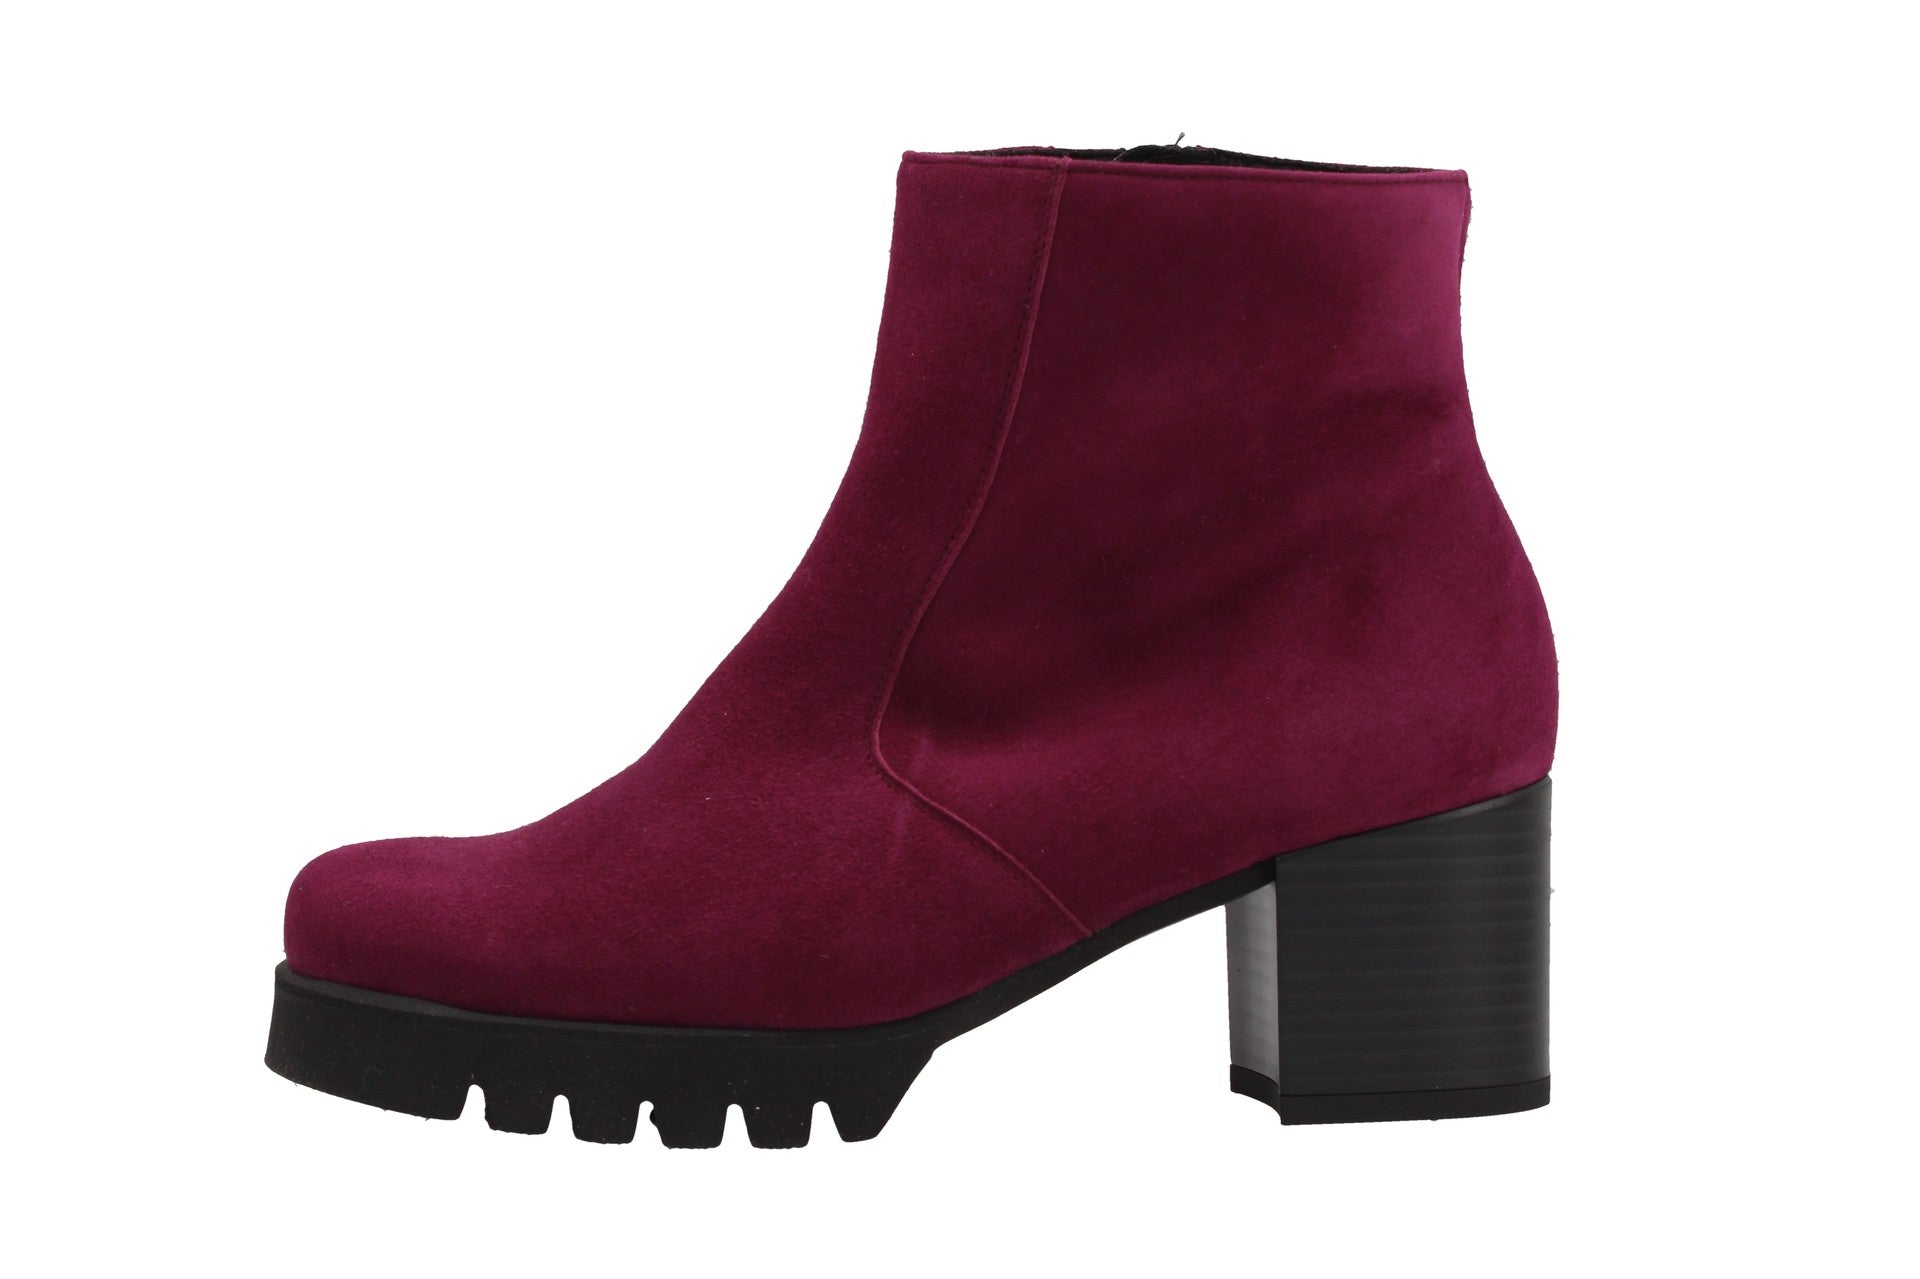 Mira – plum – boots